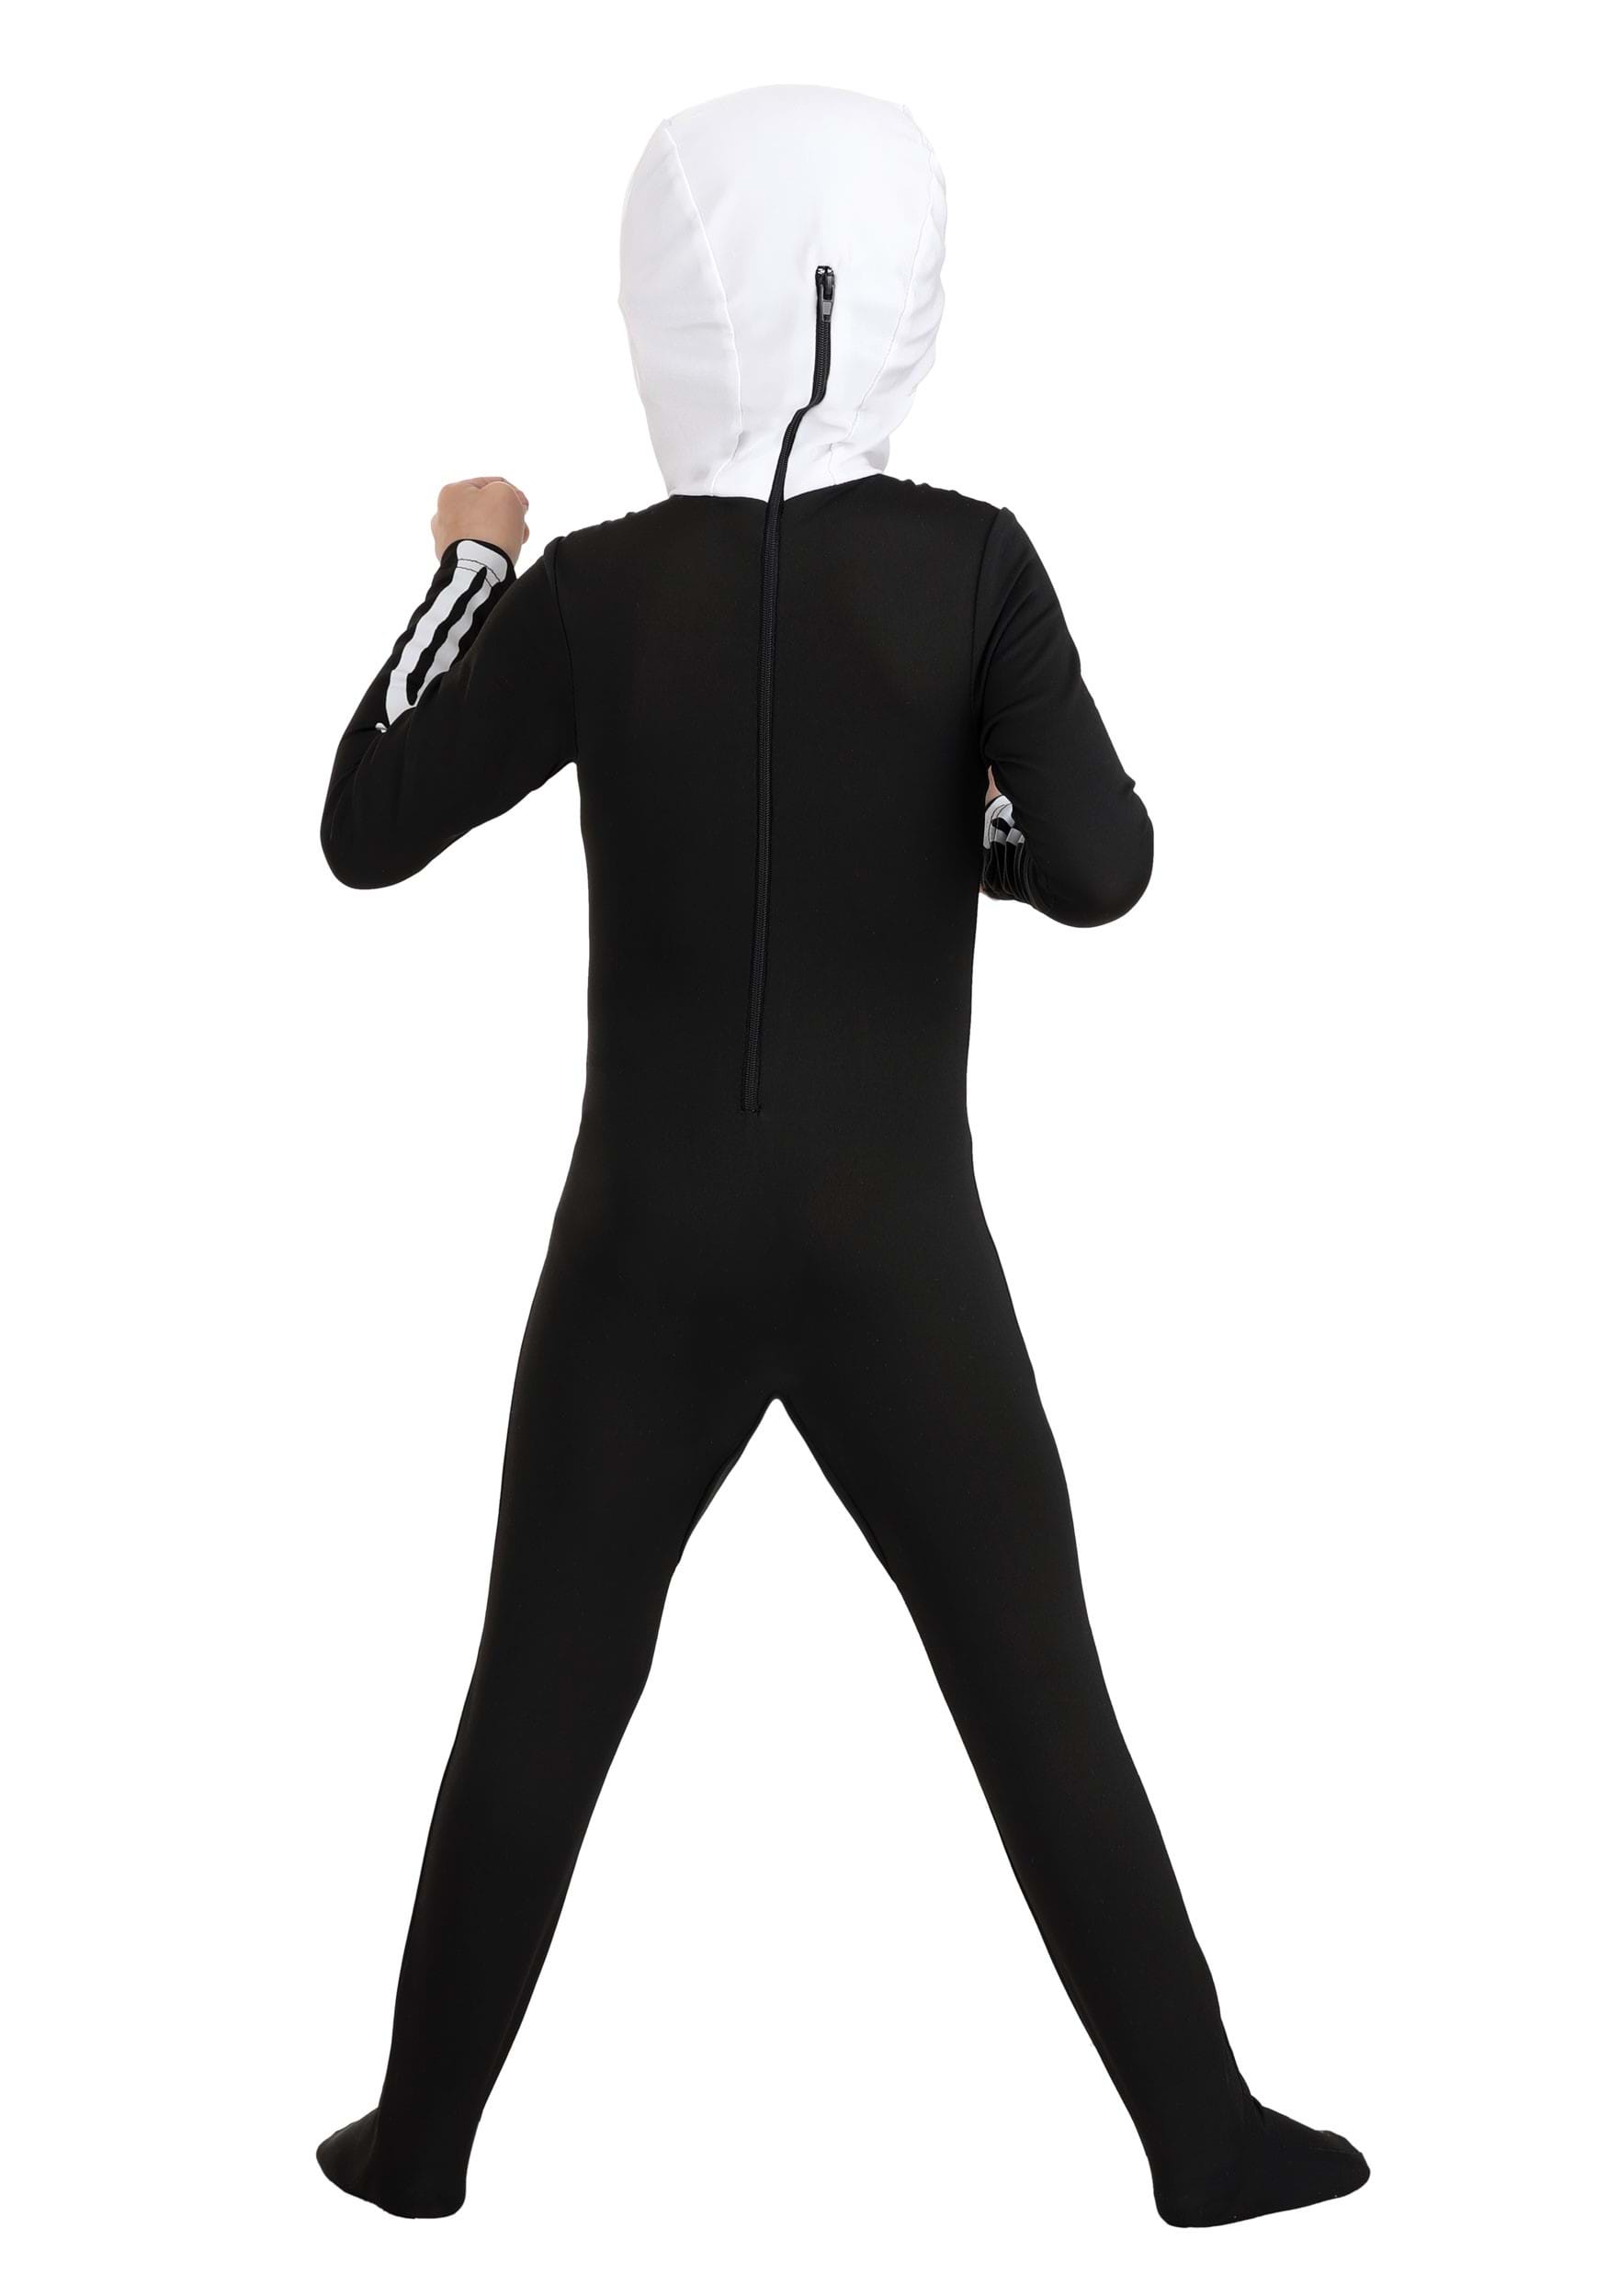 Karate Kid Toddler Skeleton Suit Costume